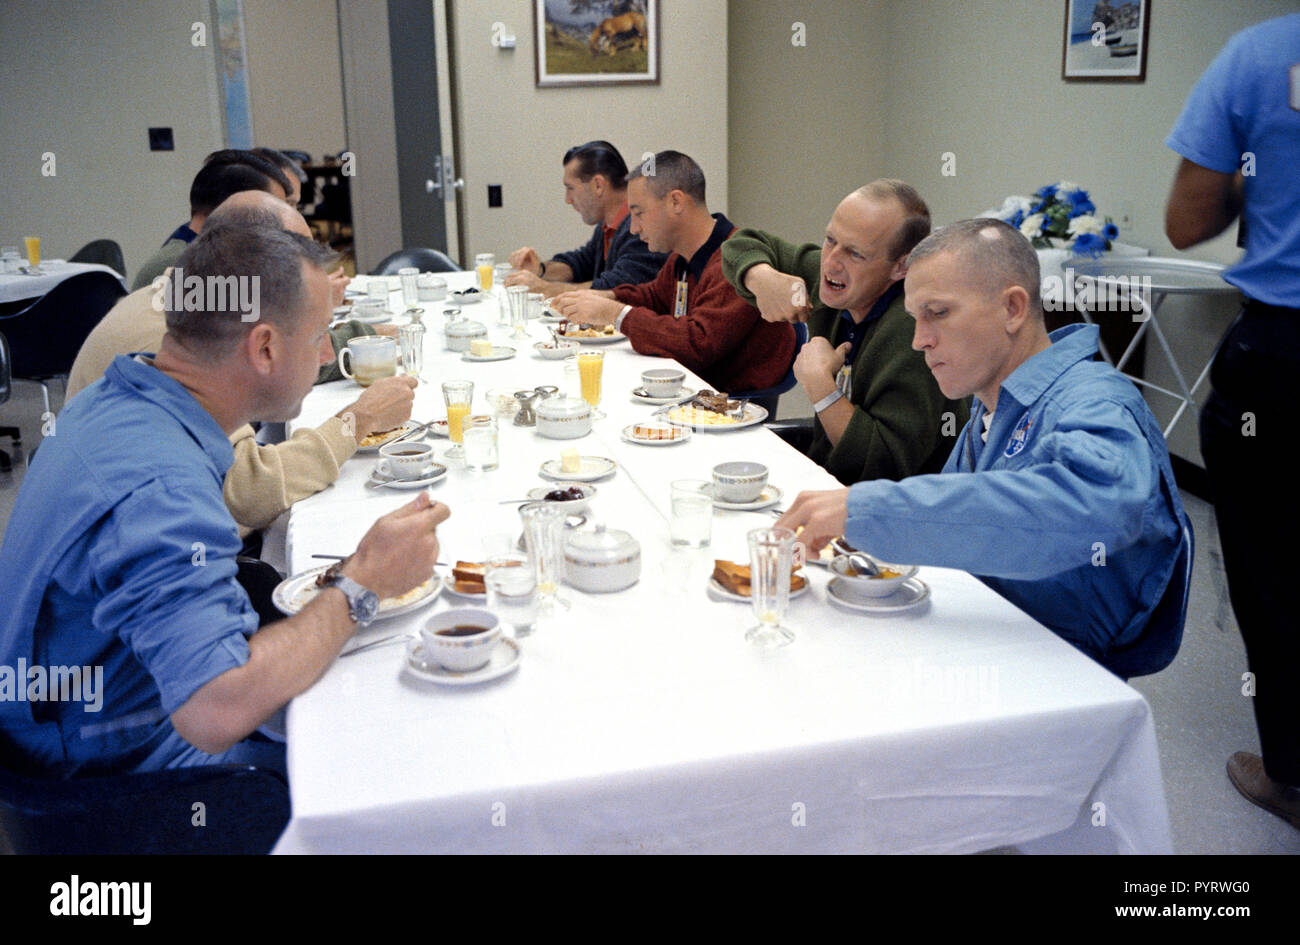 (4 Dez. 1965) - - - Astronauten melden Sie das Gemini-7 prime Crew für Frühstück im bemannte Raumfahrzeuge Betriebsgebäude, Merritt Island, am Tag der Gemini-7 starten. Um den Tisch im Uhrzeigersinn, beginnend links unten, sind Astronauten James A. Lovell jr., Gemini-7 Prime crew Pilot; Walter M. Schirra jr., Gemini-6 Prime crew Befehl Pilot; Donald K. Slayton, MSC assistant director für Flight Crew Operations; I. Virgil Grissom, Gemini-6 Backup crew Befehl Pilot; Charles Conrad jr., Gemini-5 Prime crew Pilot; und Frank Borman, Gemini-7 Prime crew Befehl Pilot. Stockfoto